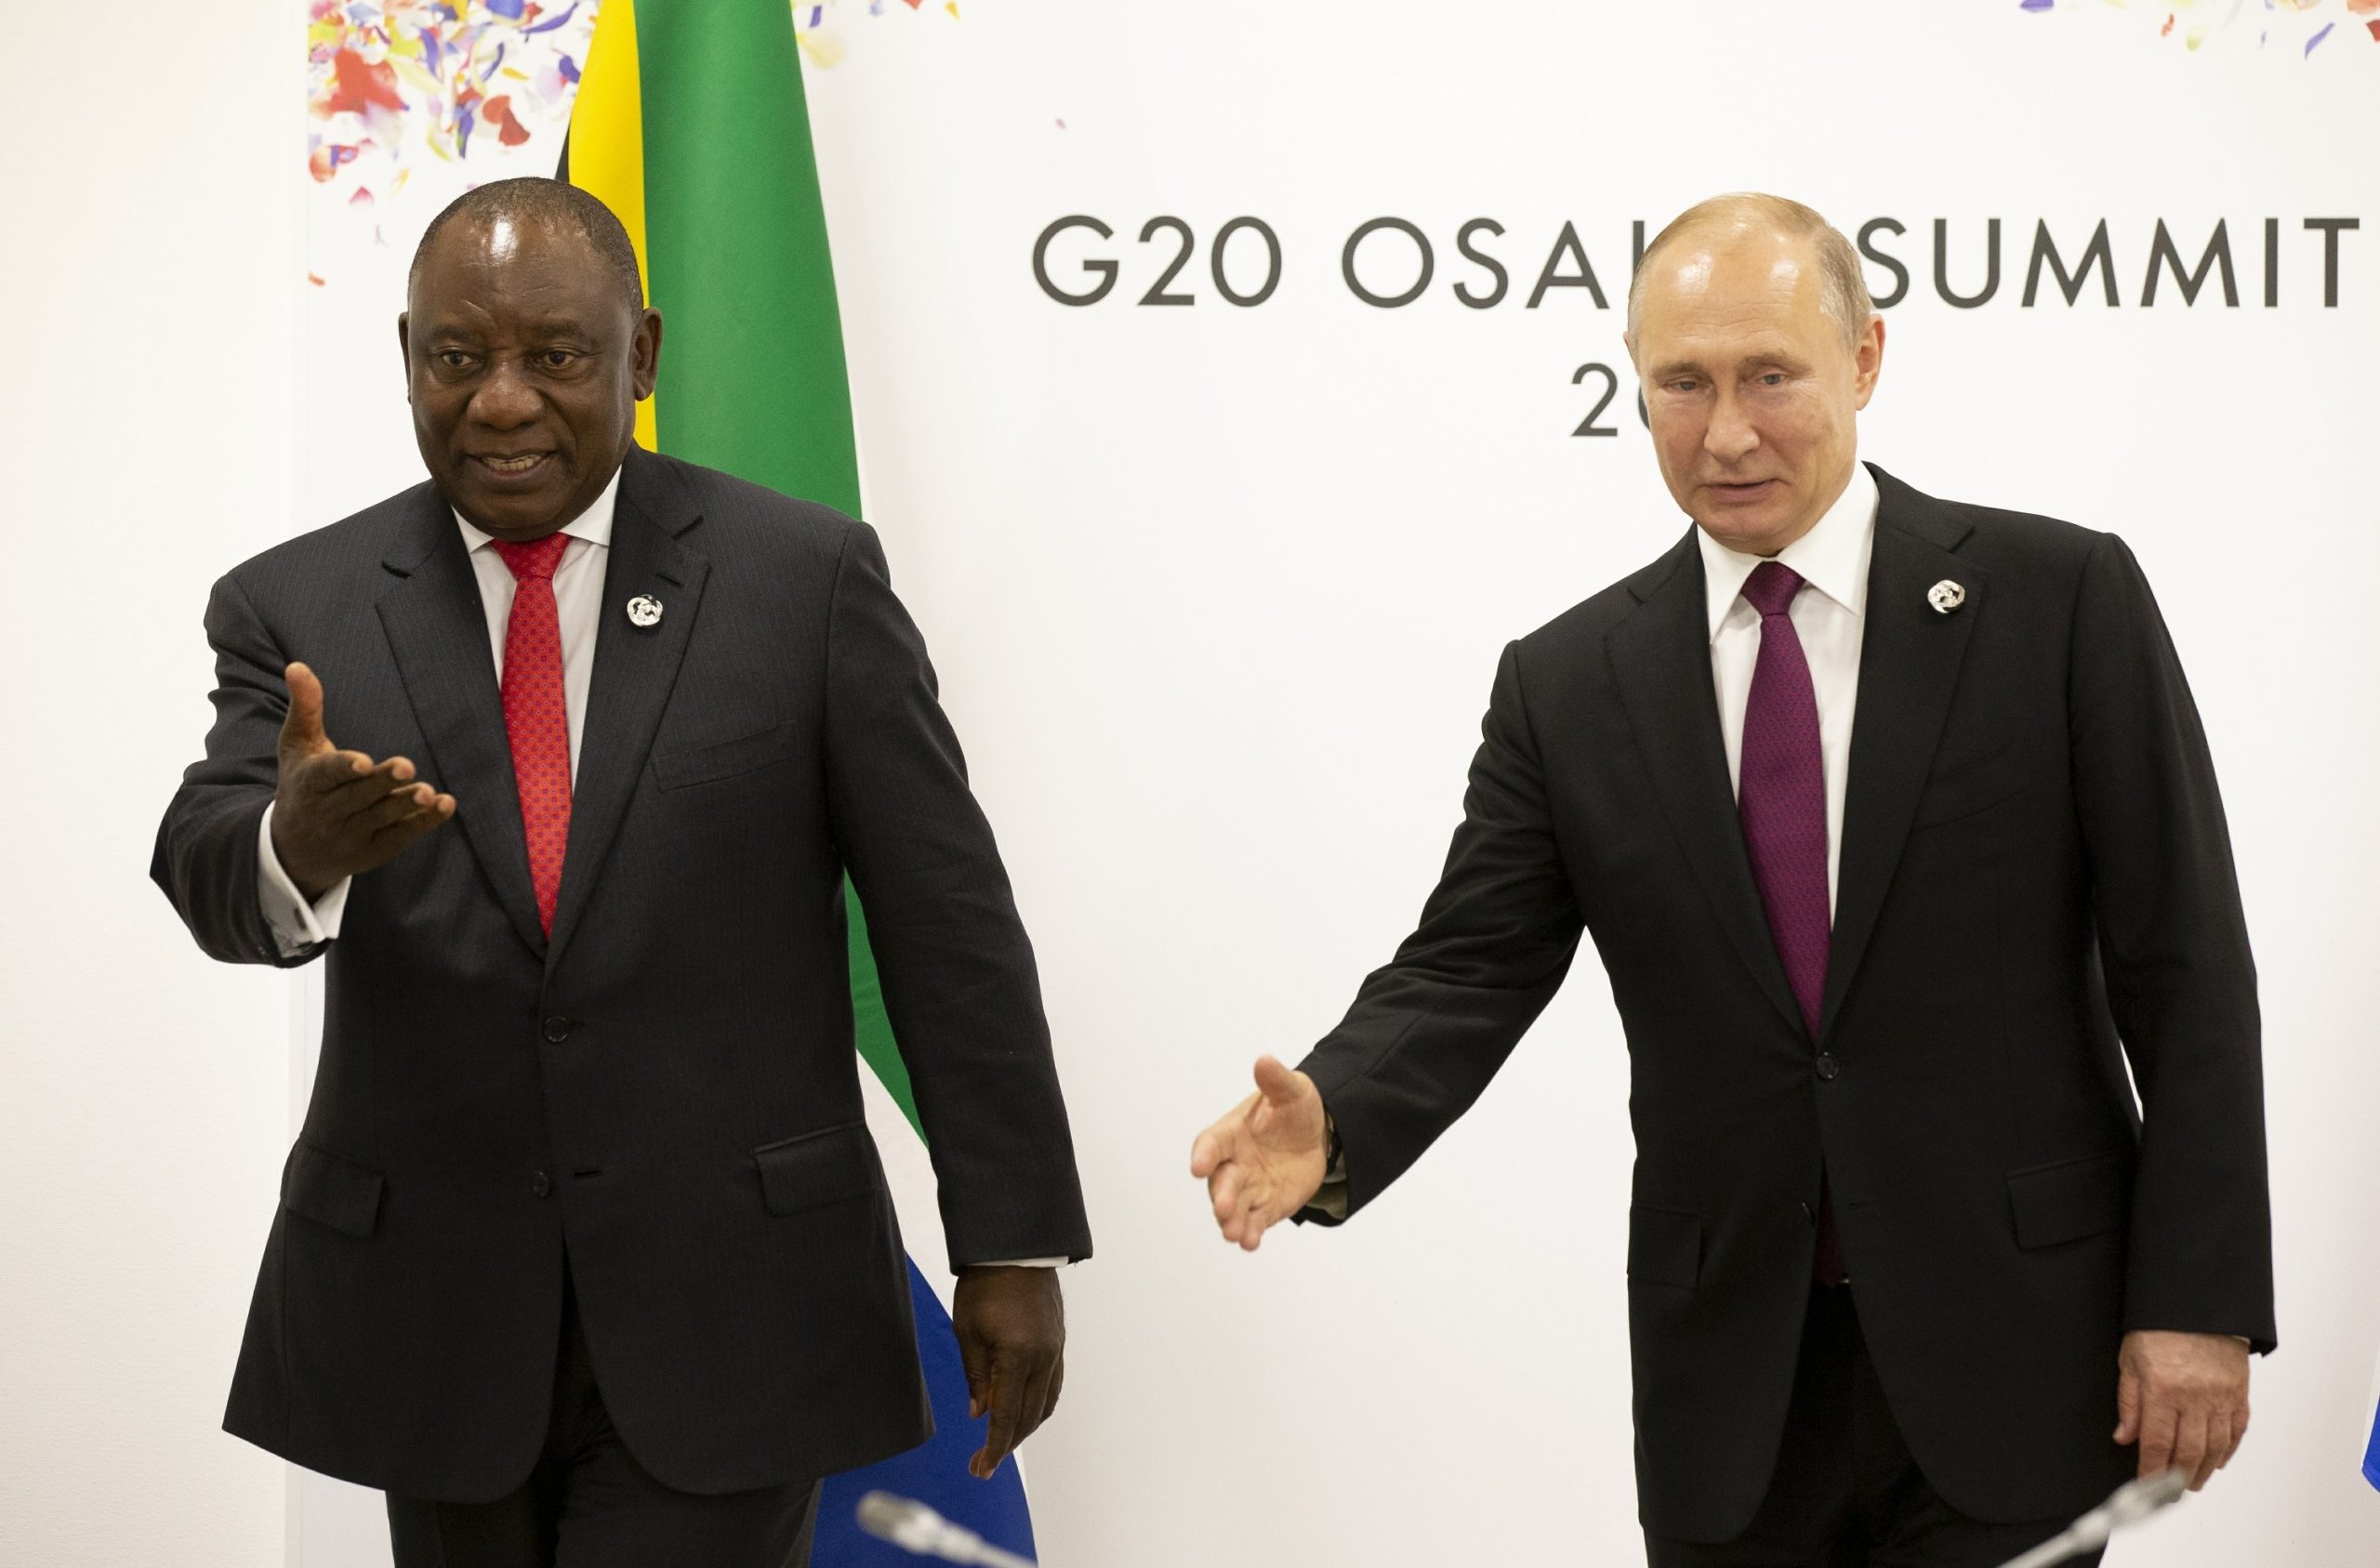 Putin Praises Growing Partnership with Africa at AU Summit